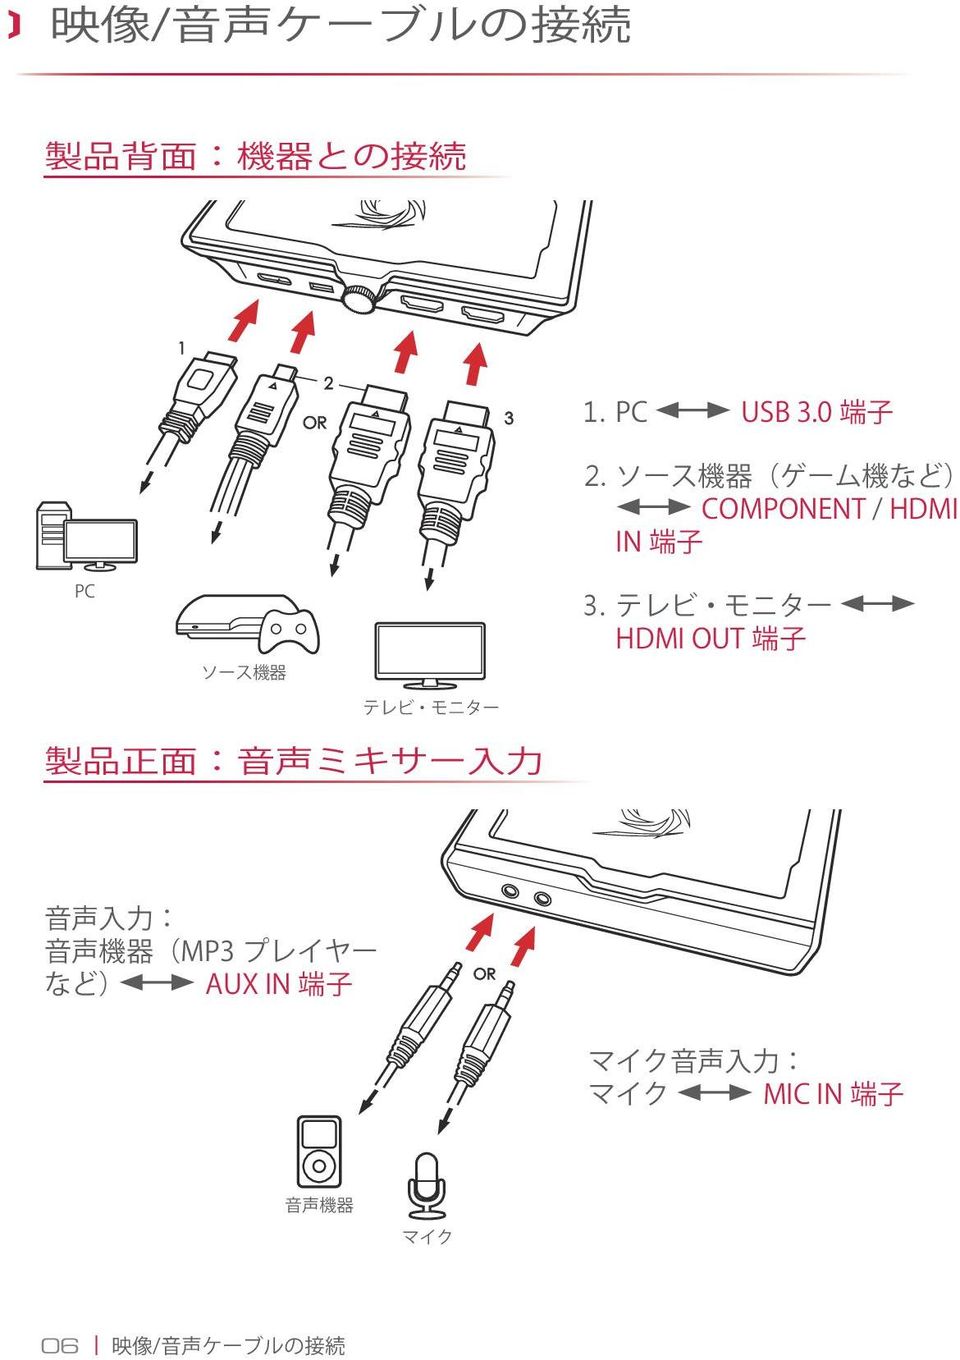 333 テレビ モニター HDMI OUT 端 子 製 品 正 面 : 音 声 ミキサー 入 力 音 声 入 力 : 音 声 機 器 (MP3